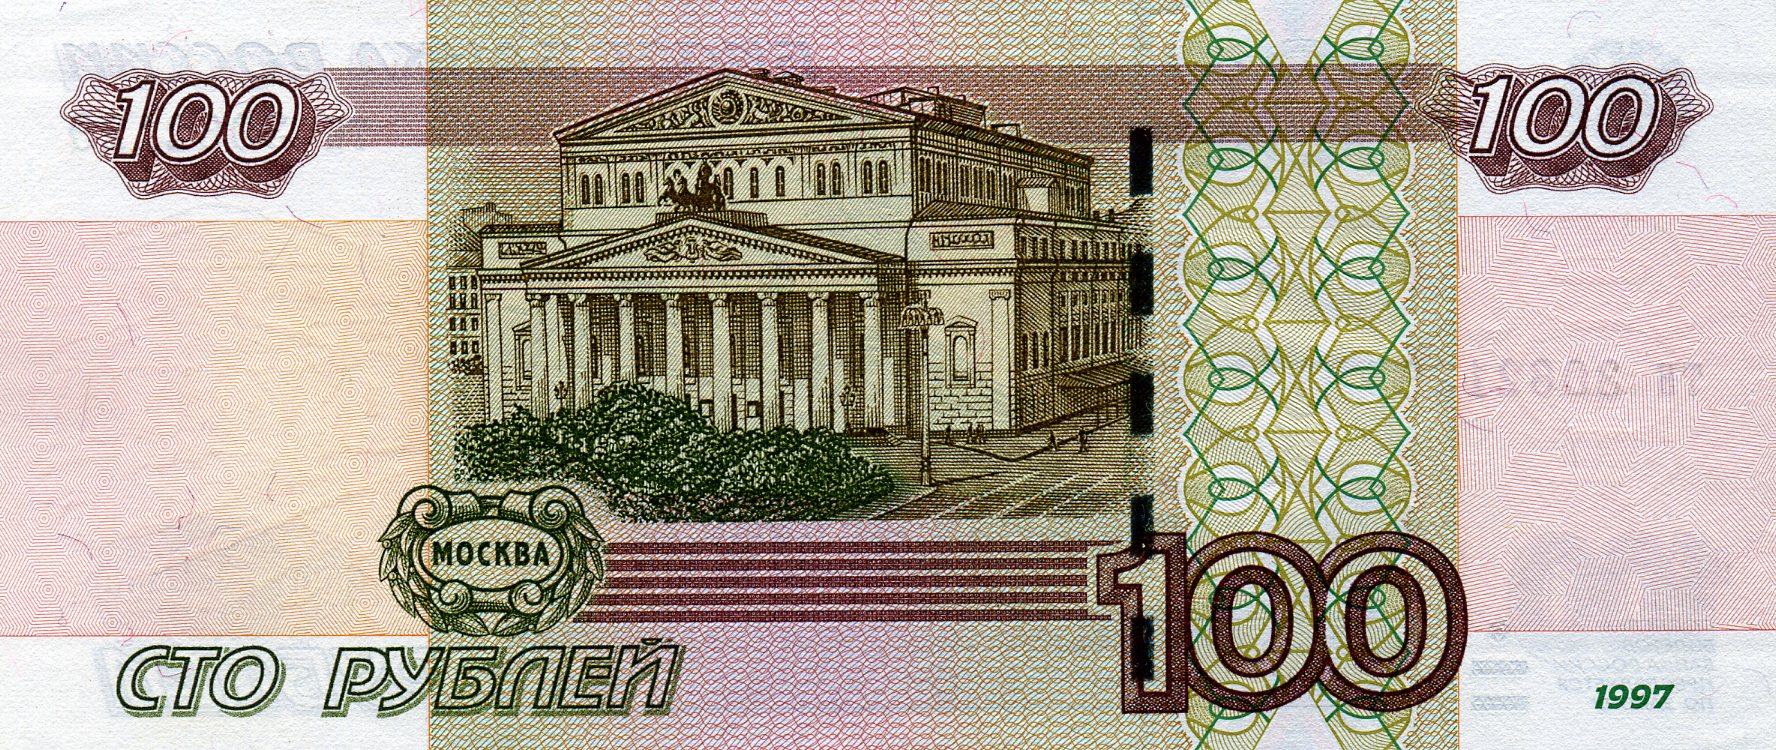 100 рублей 1997 года. Реверс. Реферат Рефератович.